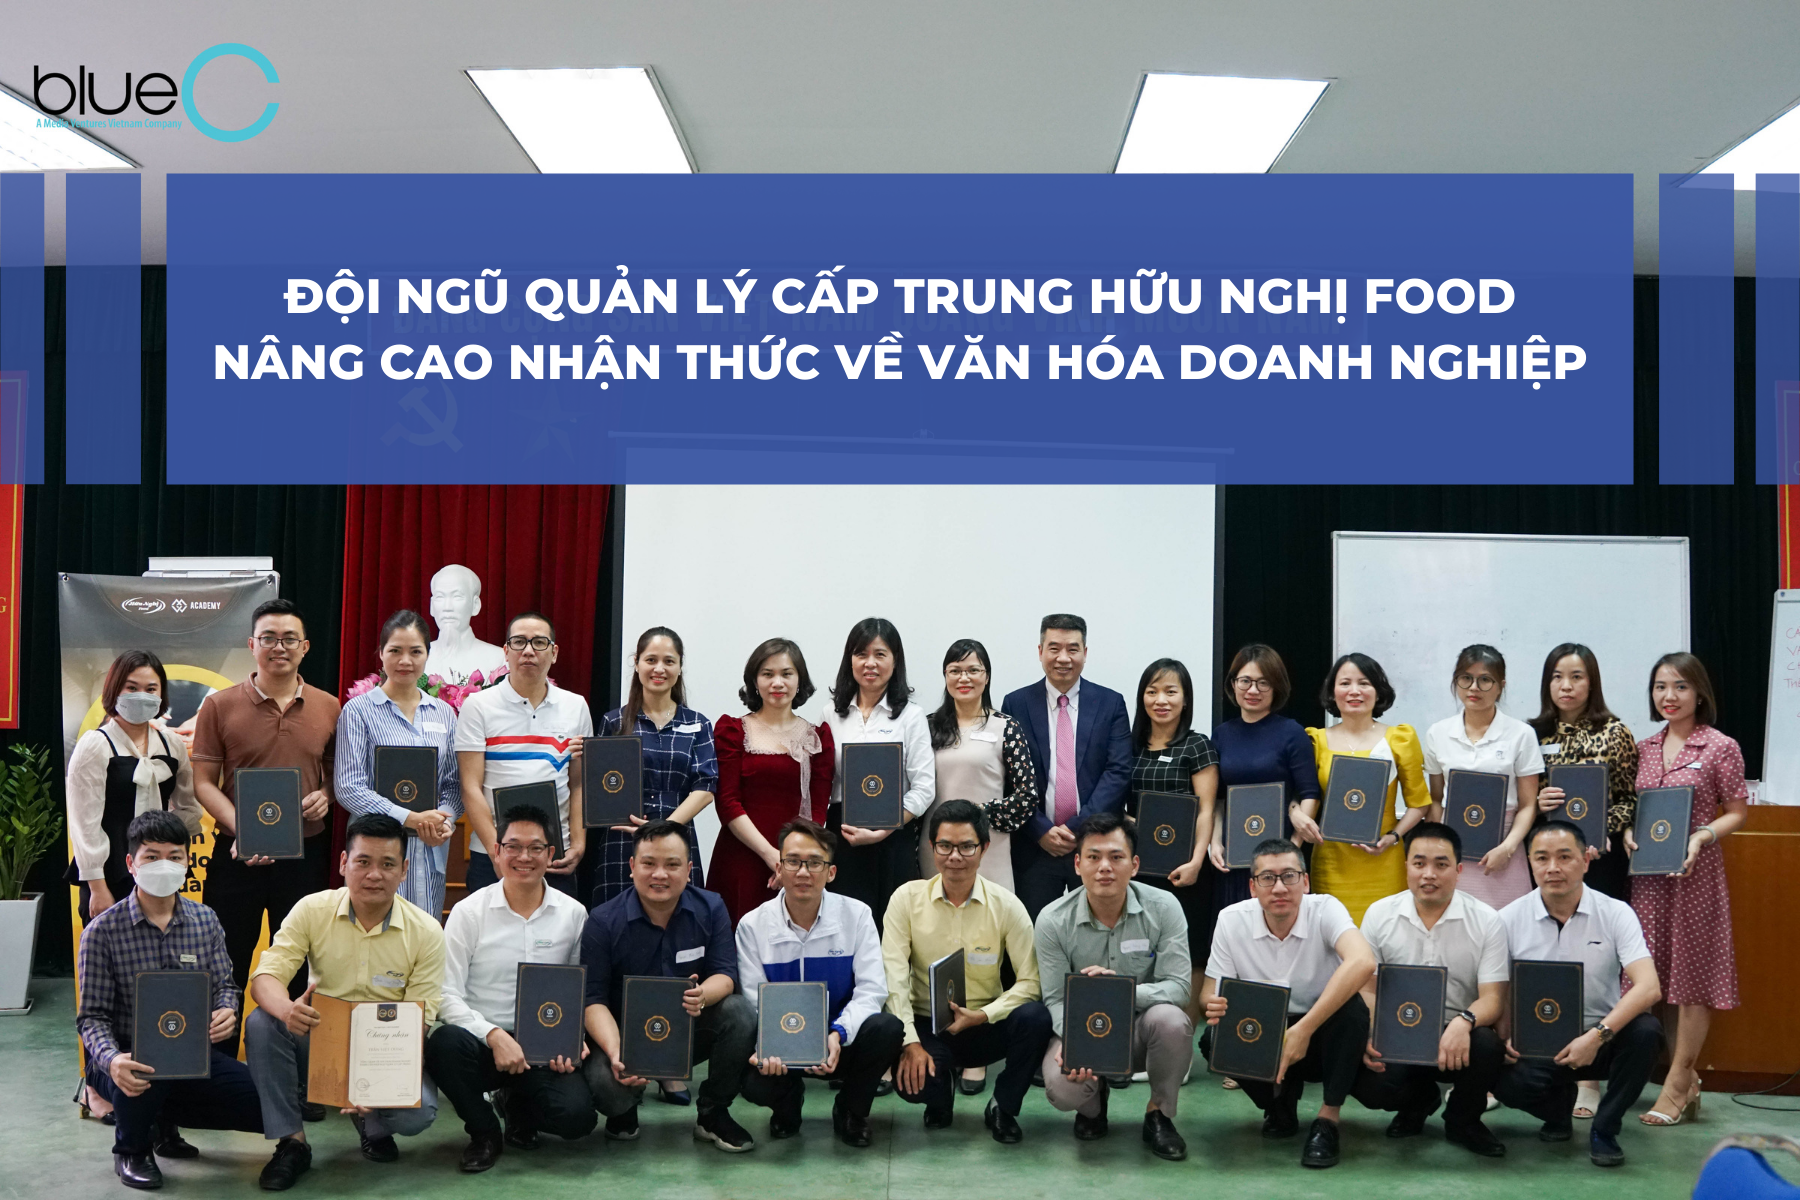 Đội ngũ quản lý cấp trung Hữu Nghị Food nâng cao nhận thức về văn hóa doanh nghiệp